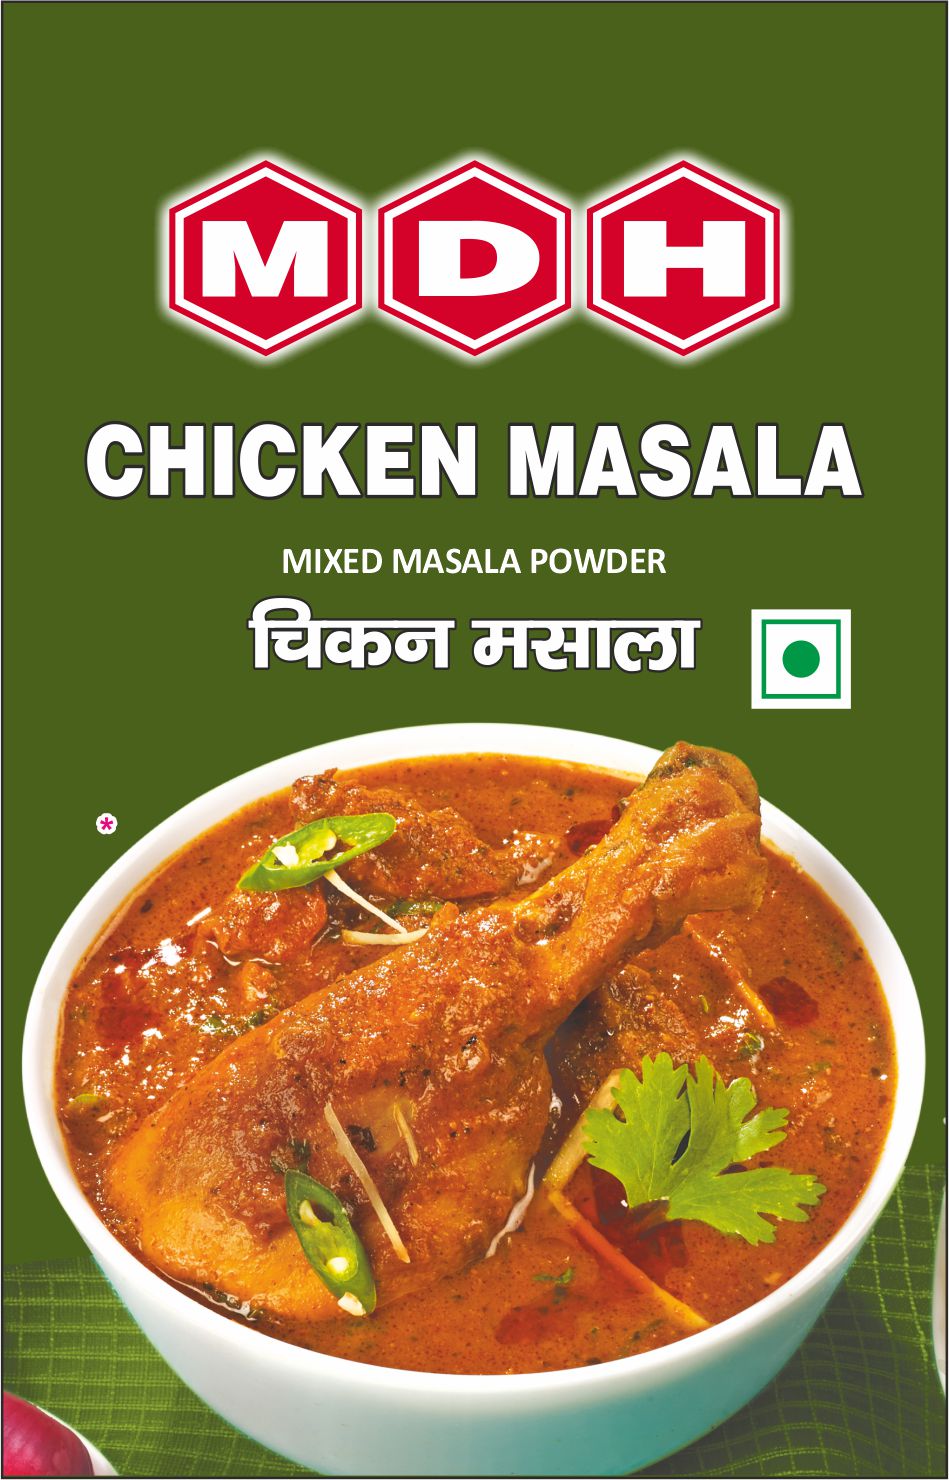 MDH-Chicken Masala-100g